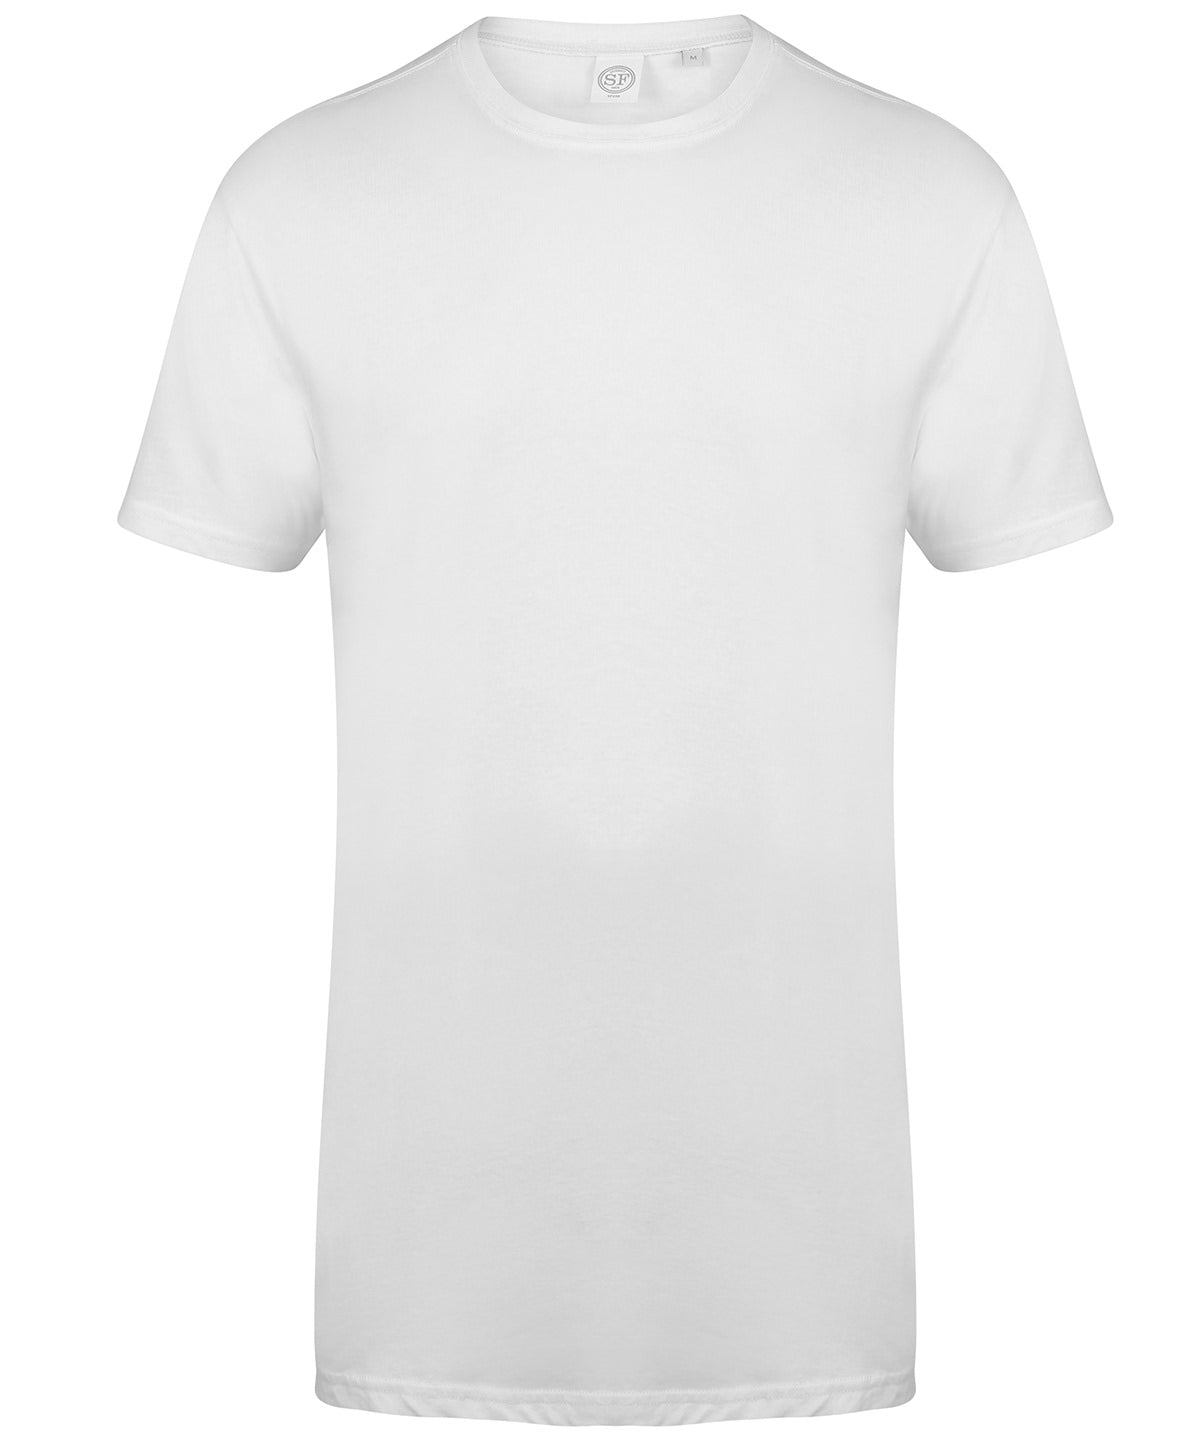 Stuttermabolir - Longline T-shirt With Dipped Hem